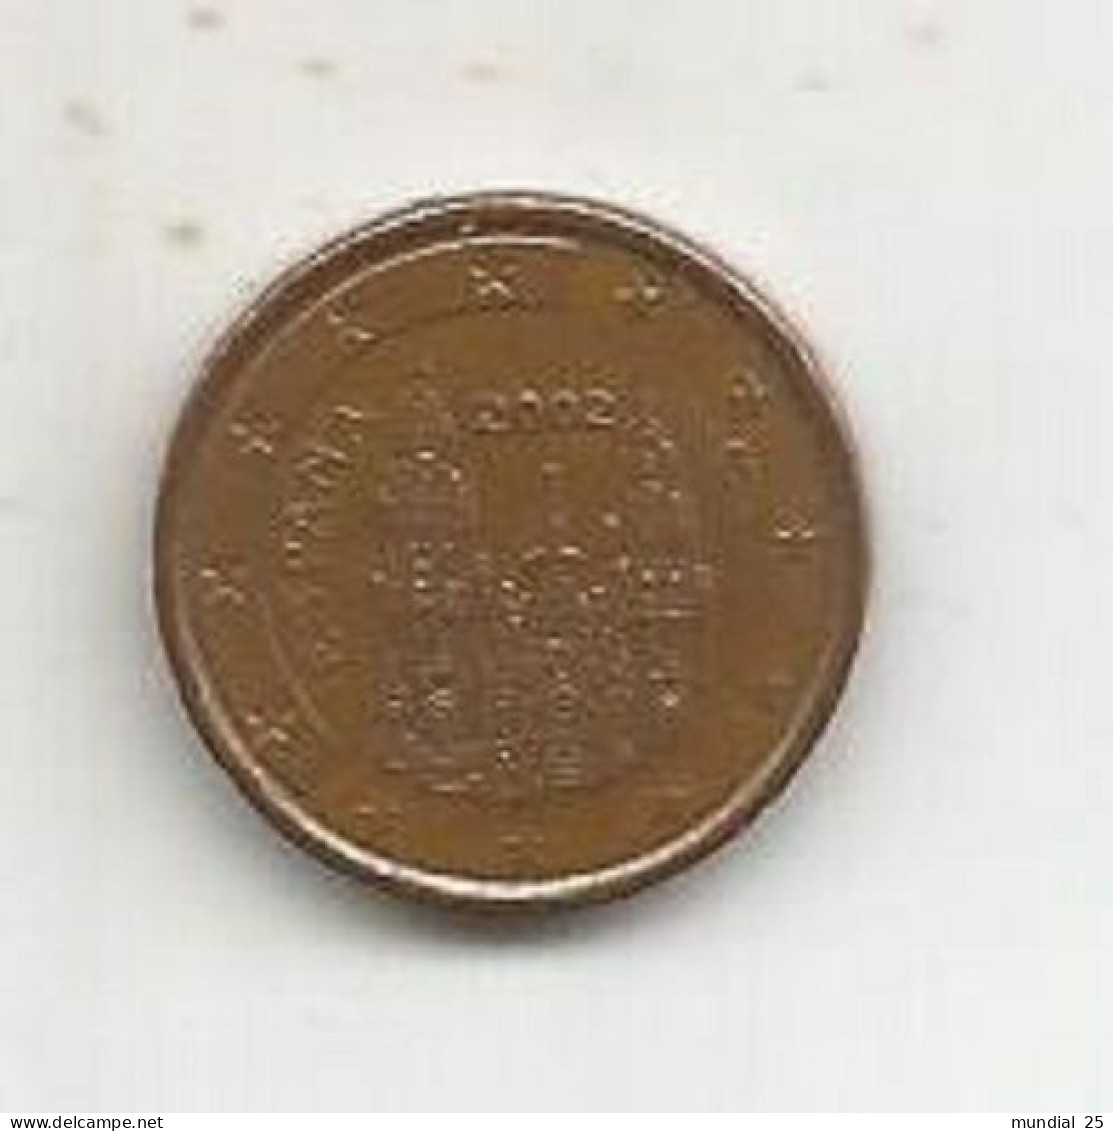 SPAIN 1 EURO CENT 2002 - Spanien